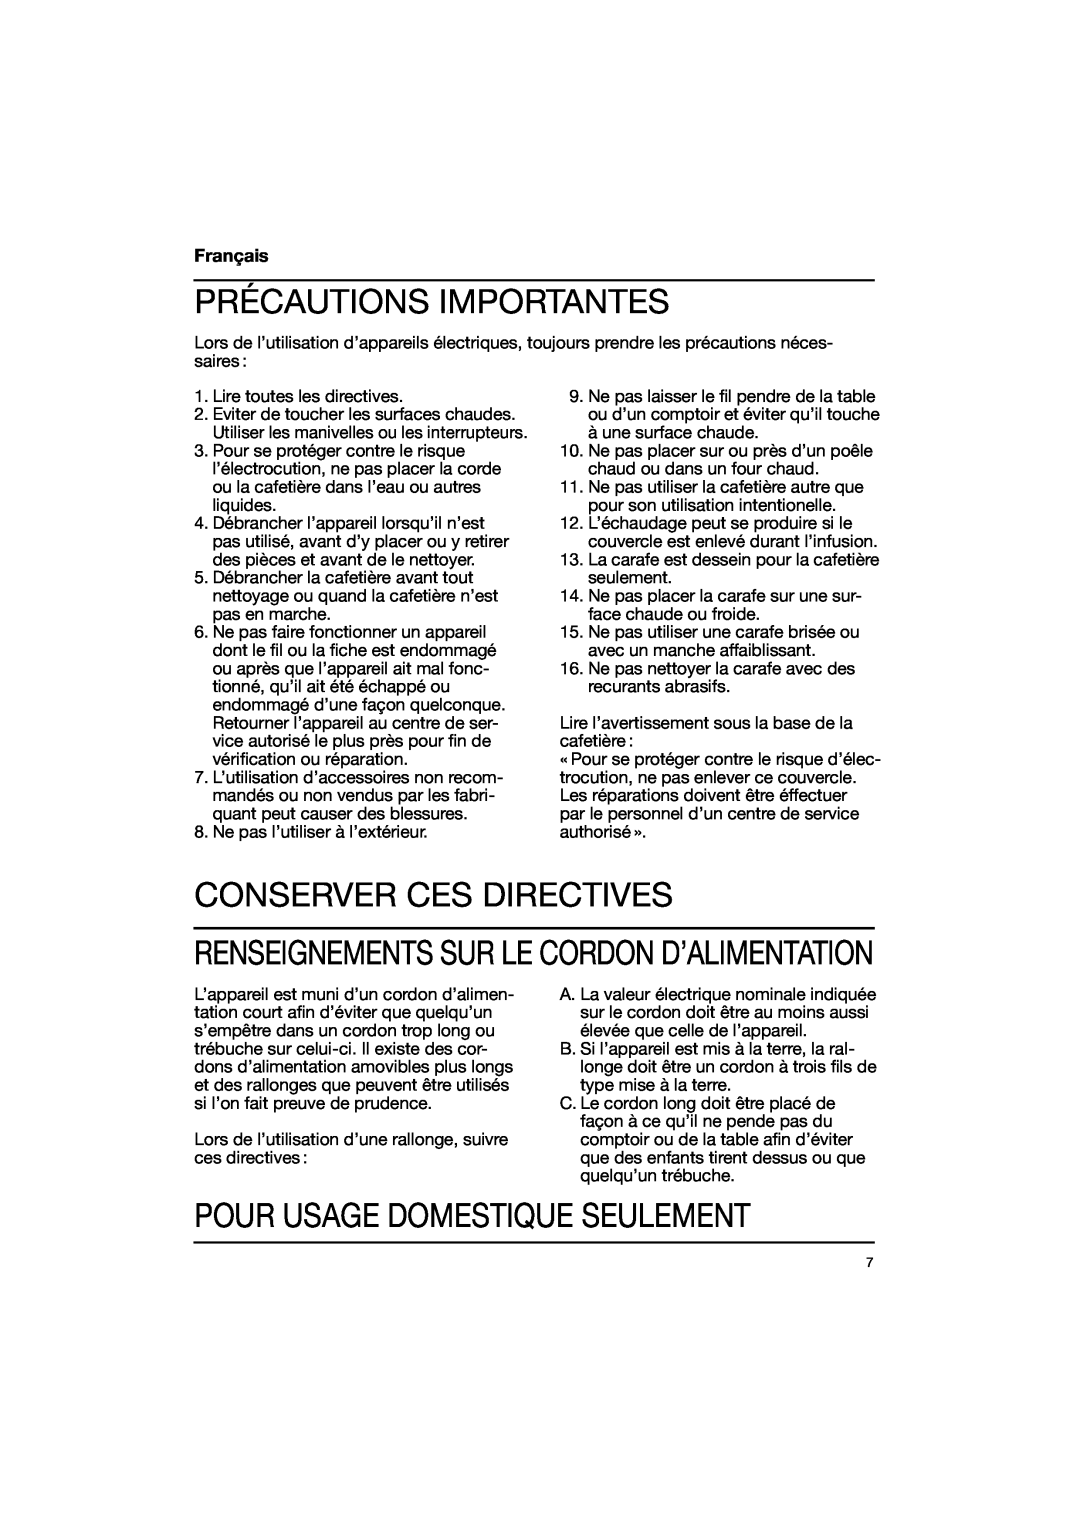 Braun 3111, 3113, 3114 warranty Précautions Importantes, Conserver Ces Directives, Pour Usage Domestique Seulement, Français 